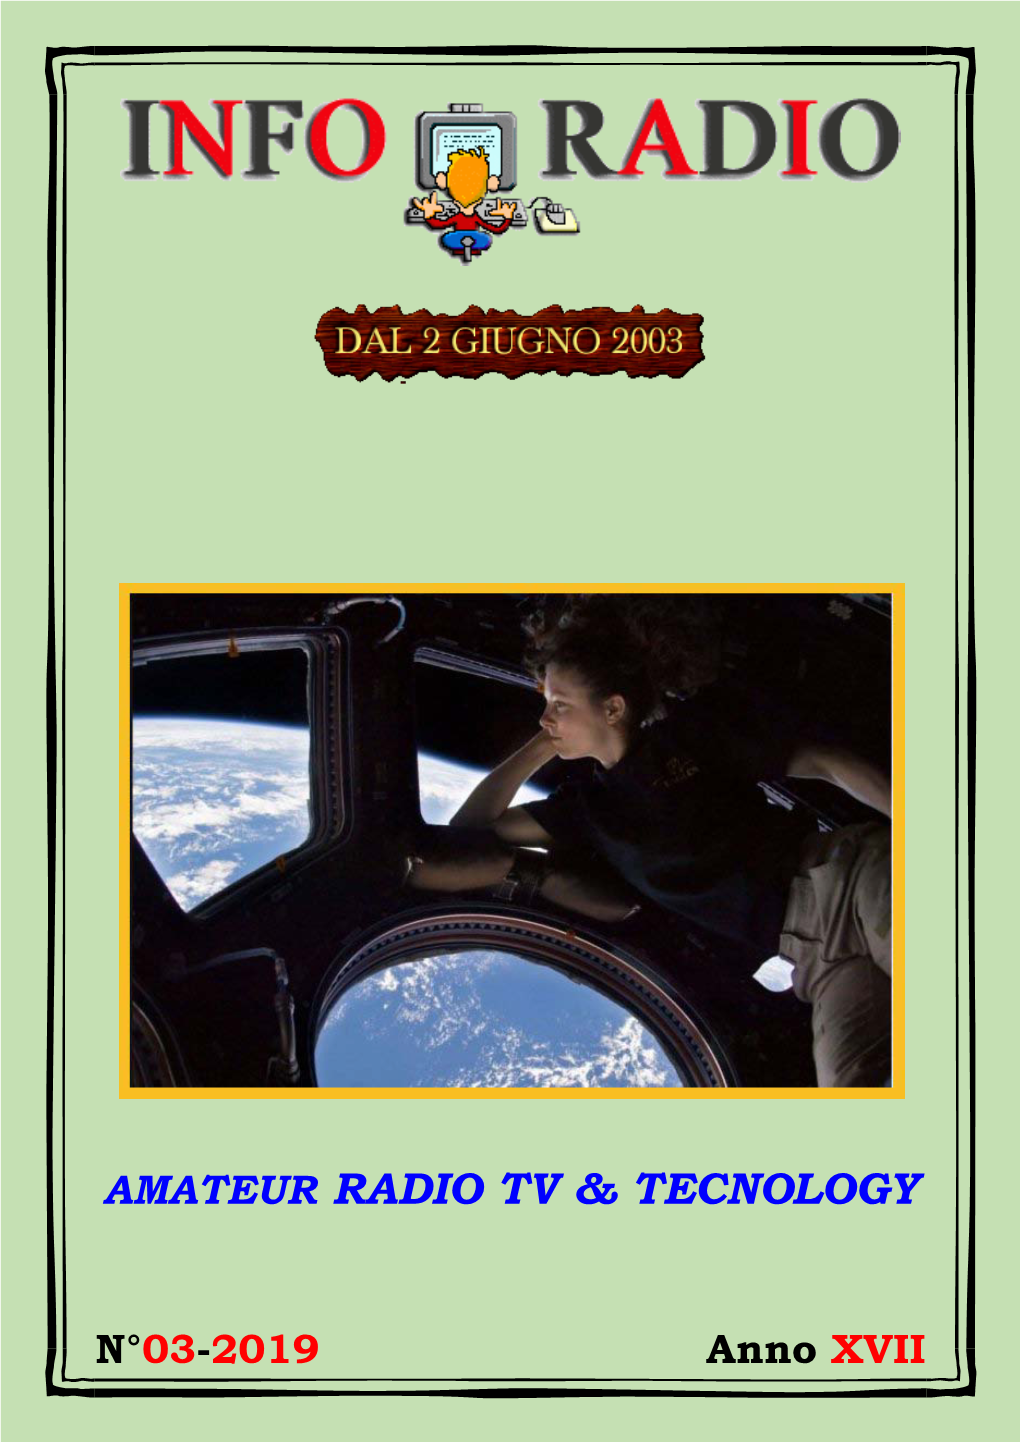 Amateur Radio Tv & Tecnology